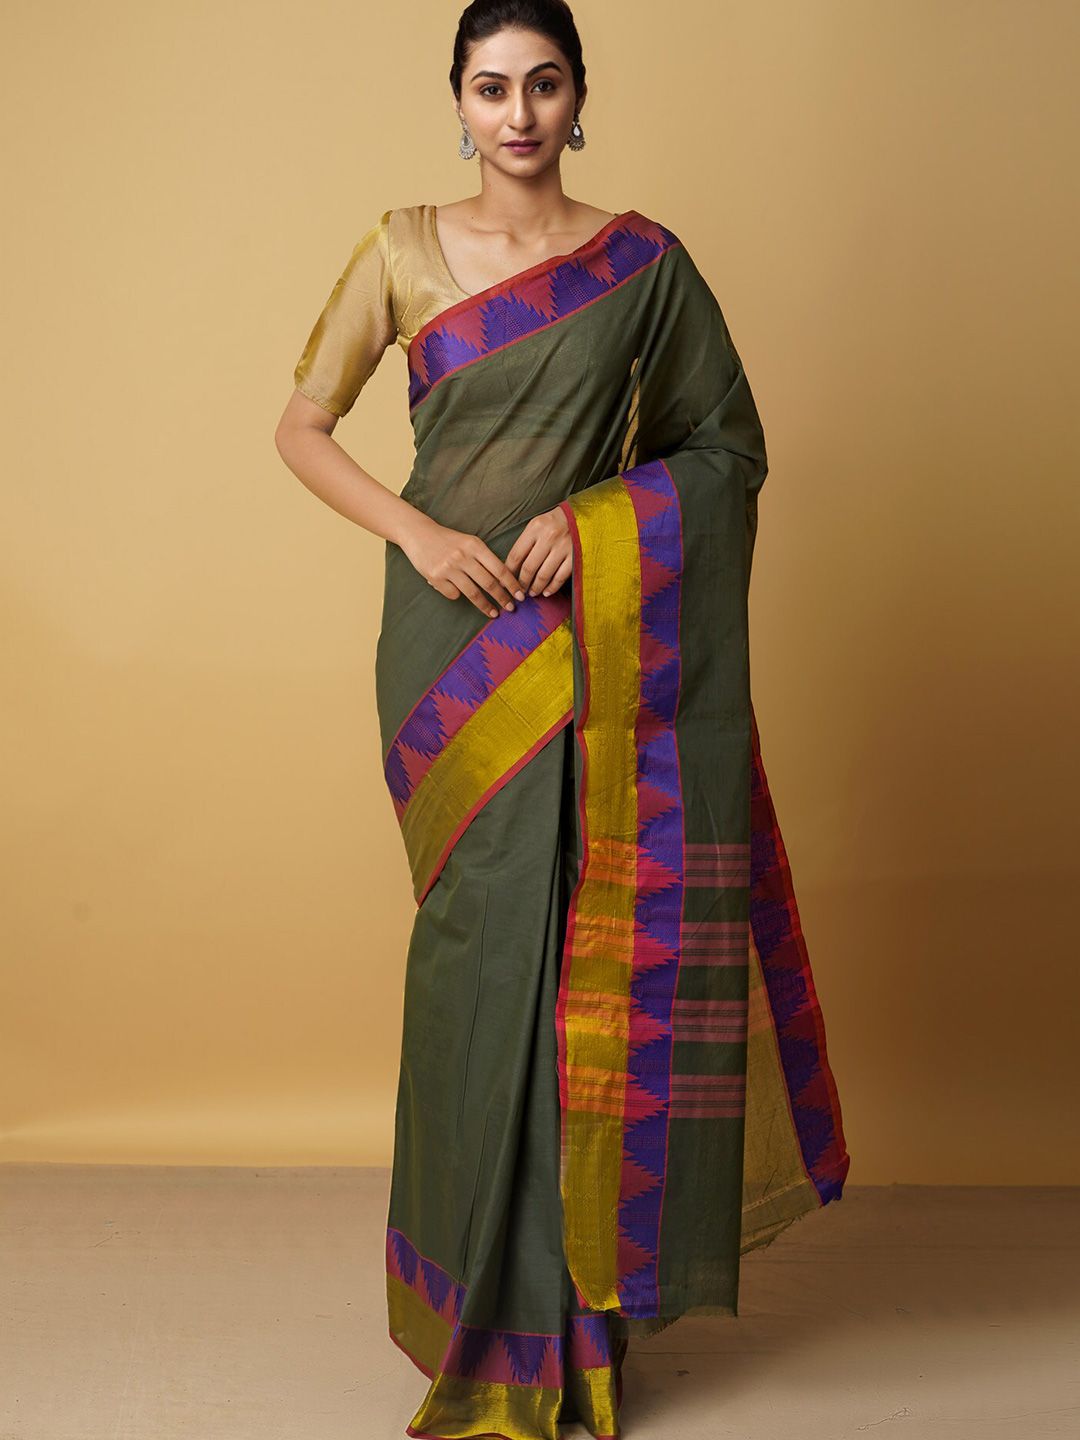 Unnati Silks Green & Gold-Toned Woven Design Zari Pure Cotton Venkatgiri Saree Price in India